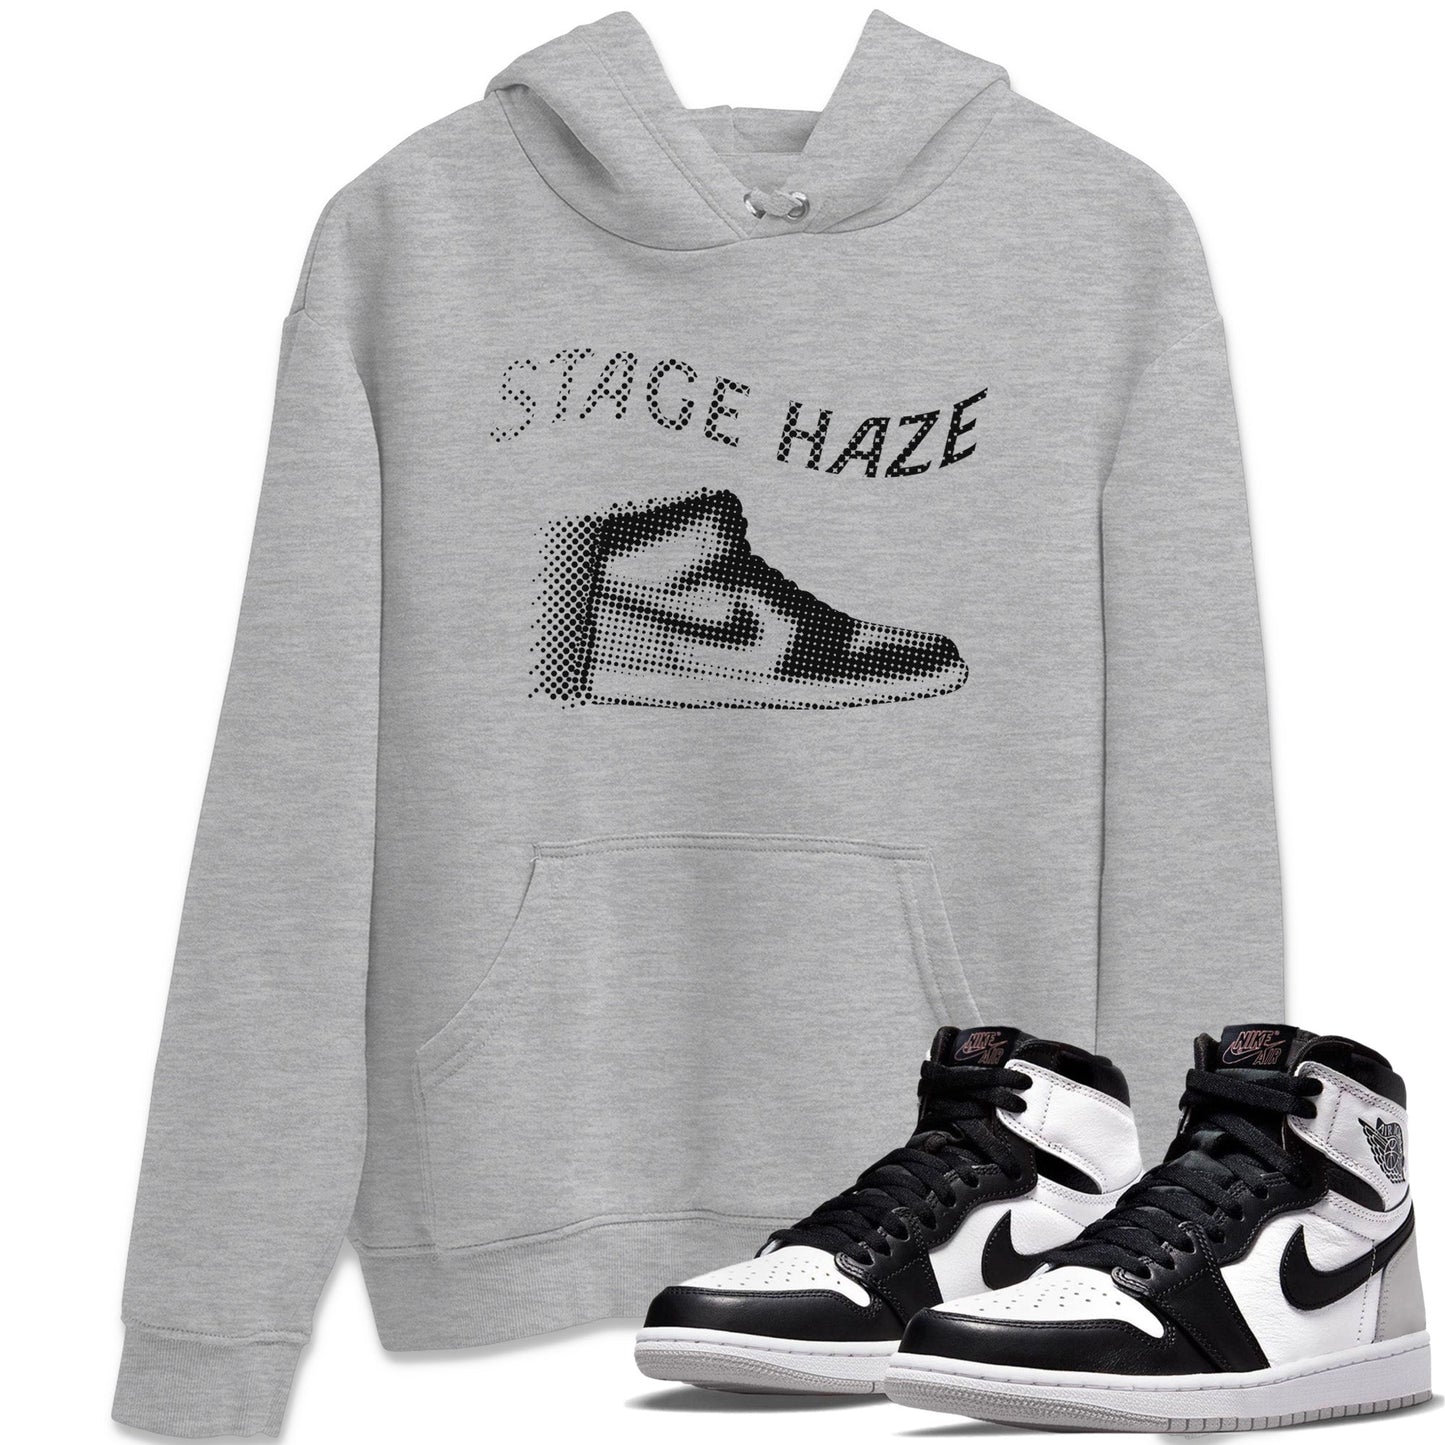 Jordan 1 Stage Haze Sneaker Tees Drip Gear Zone Hazy Sneaker Tees Jordan 1 Stage Haze Shirt Unisex Shirts